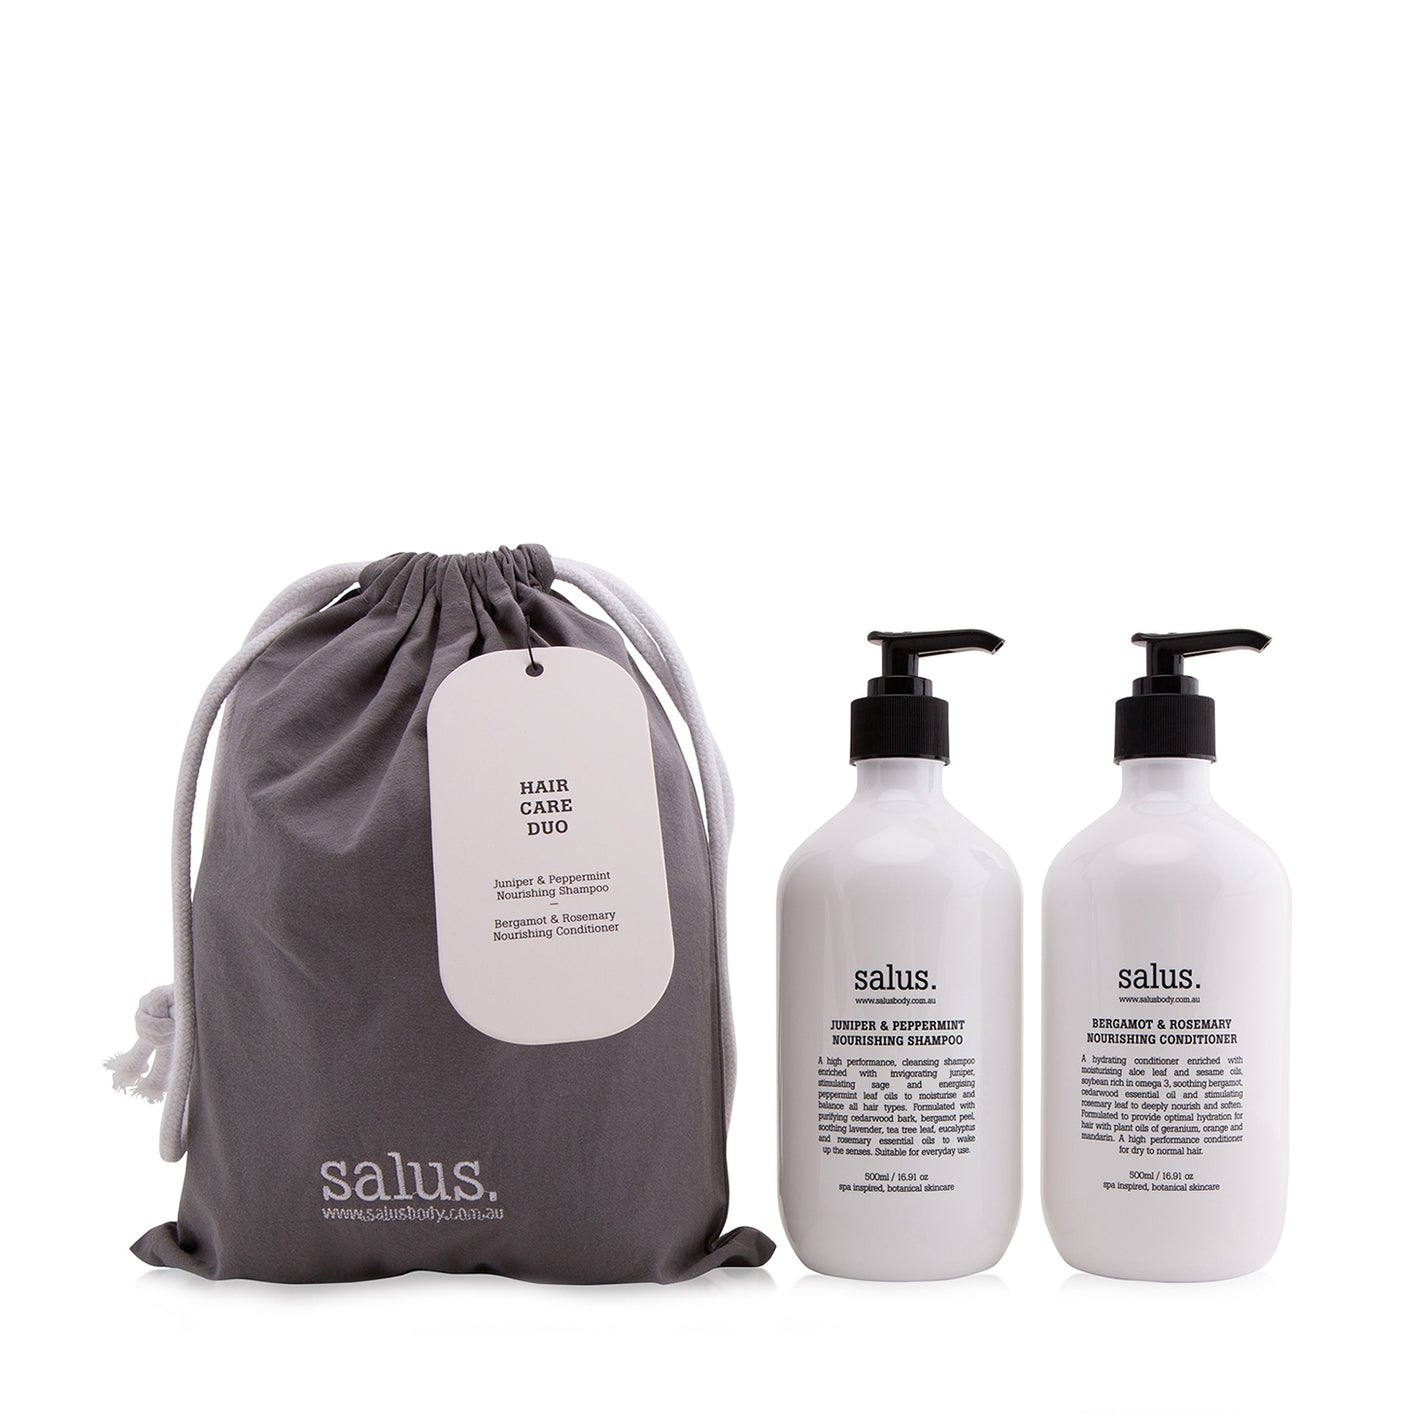 Salus Hair Care Duo - Value $70.00